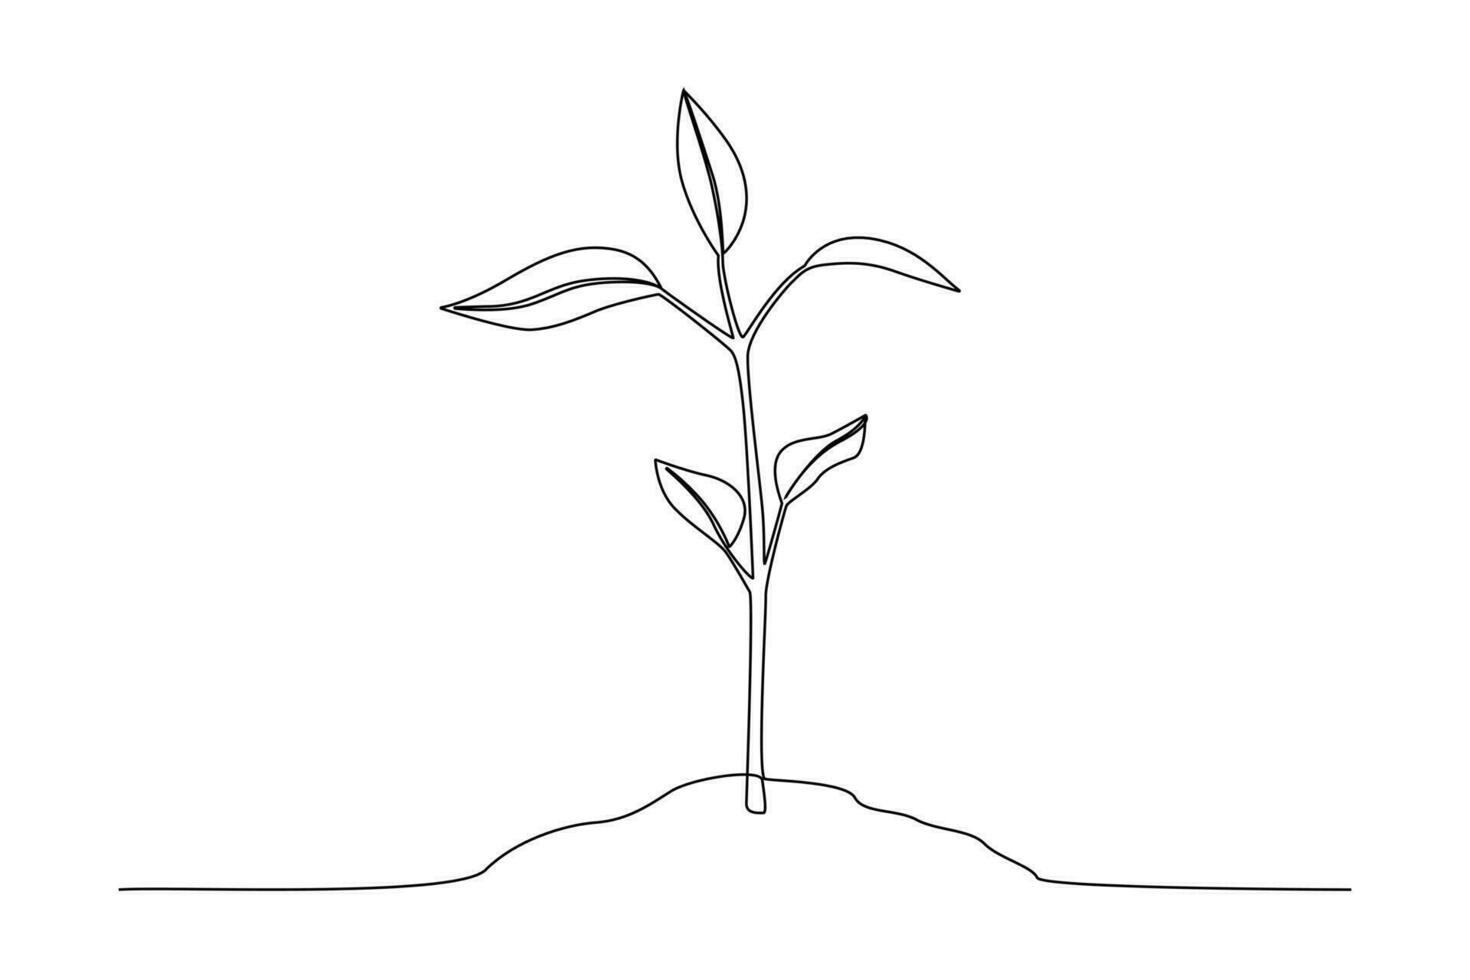 Single einer Linie Zeichnung Pflanzen und Kräuter Konzept. kontinuierlich Linie zeichnen Design Grafik Vektor Illustration.